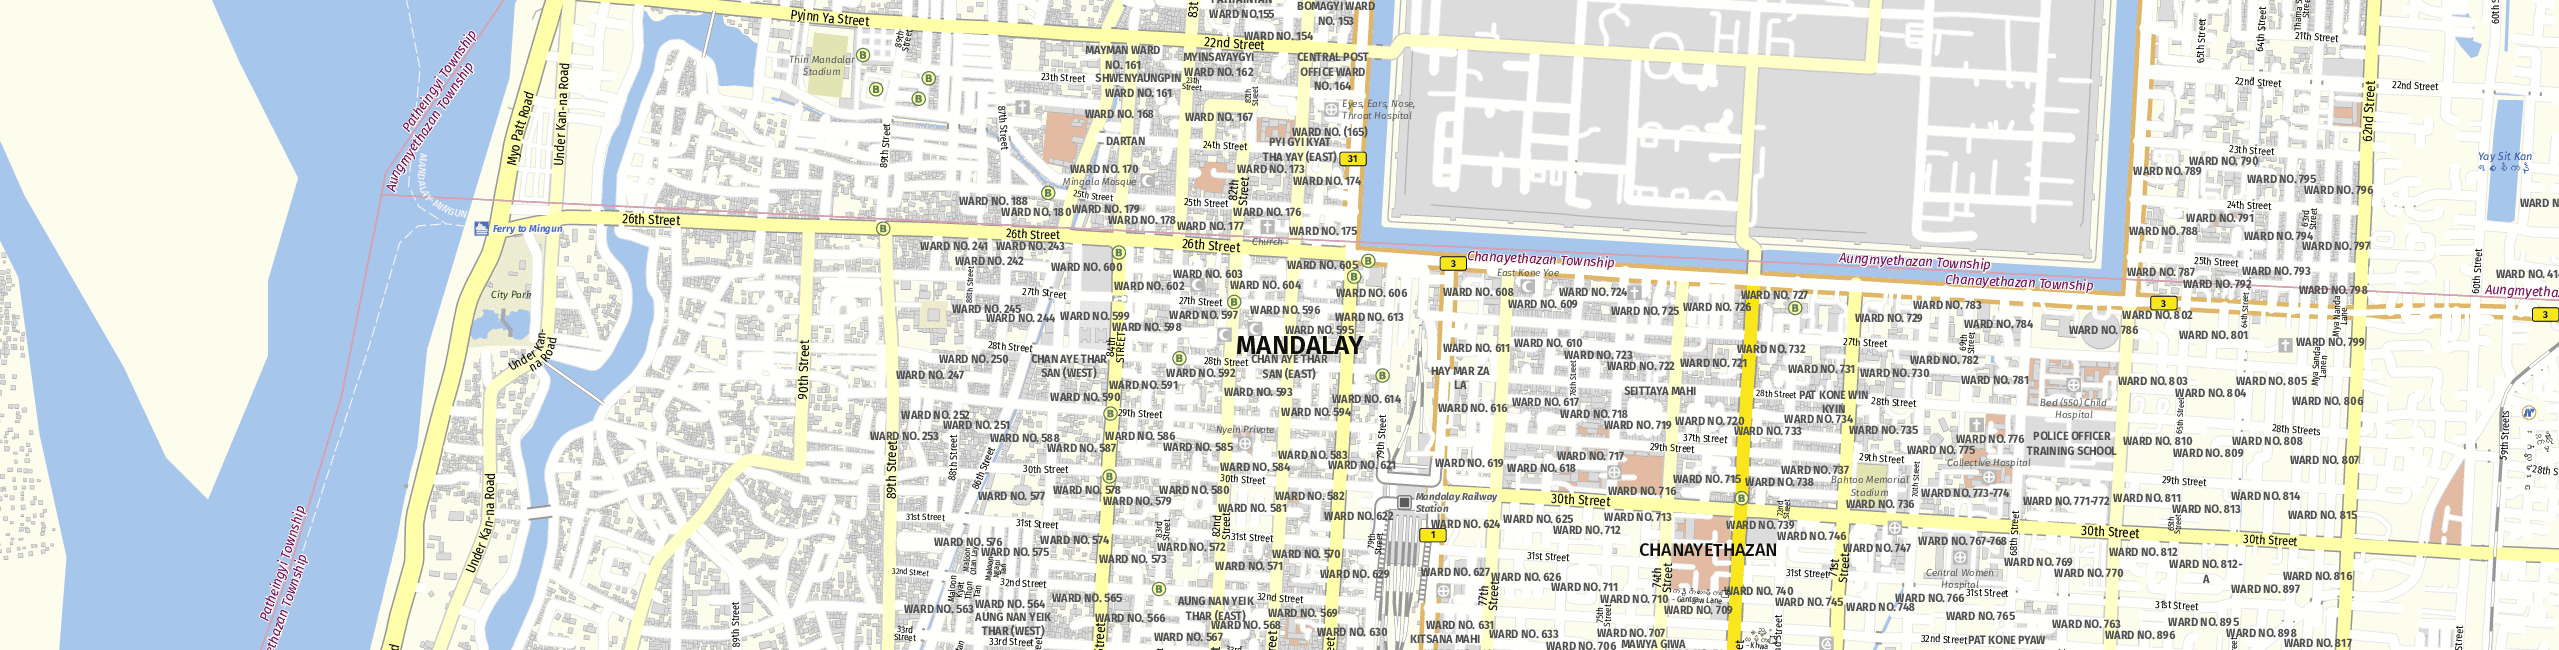 Stadtplan Mandalay zum Downloaden.